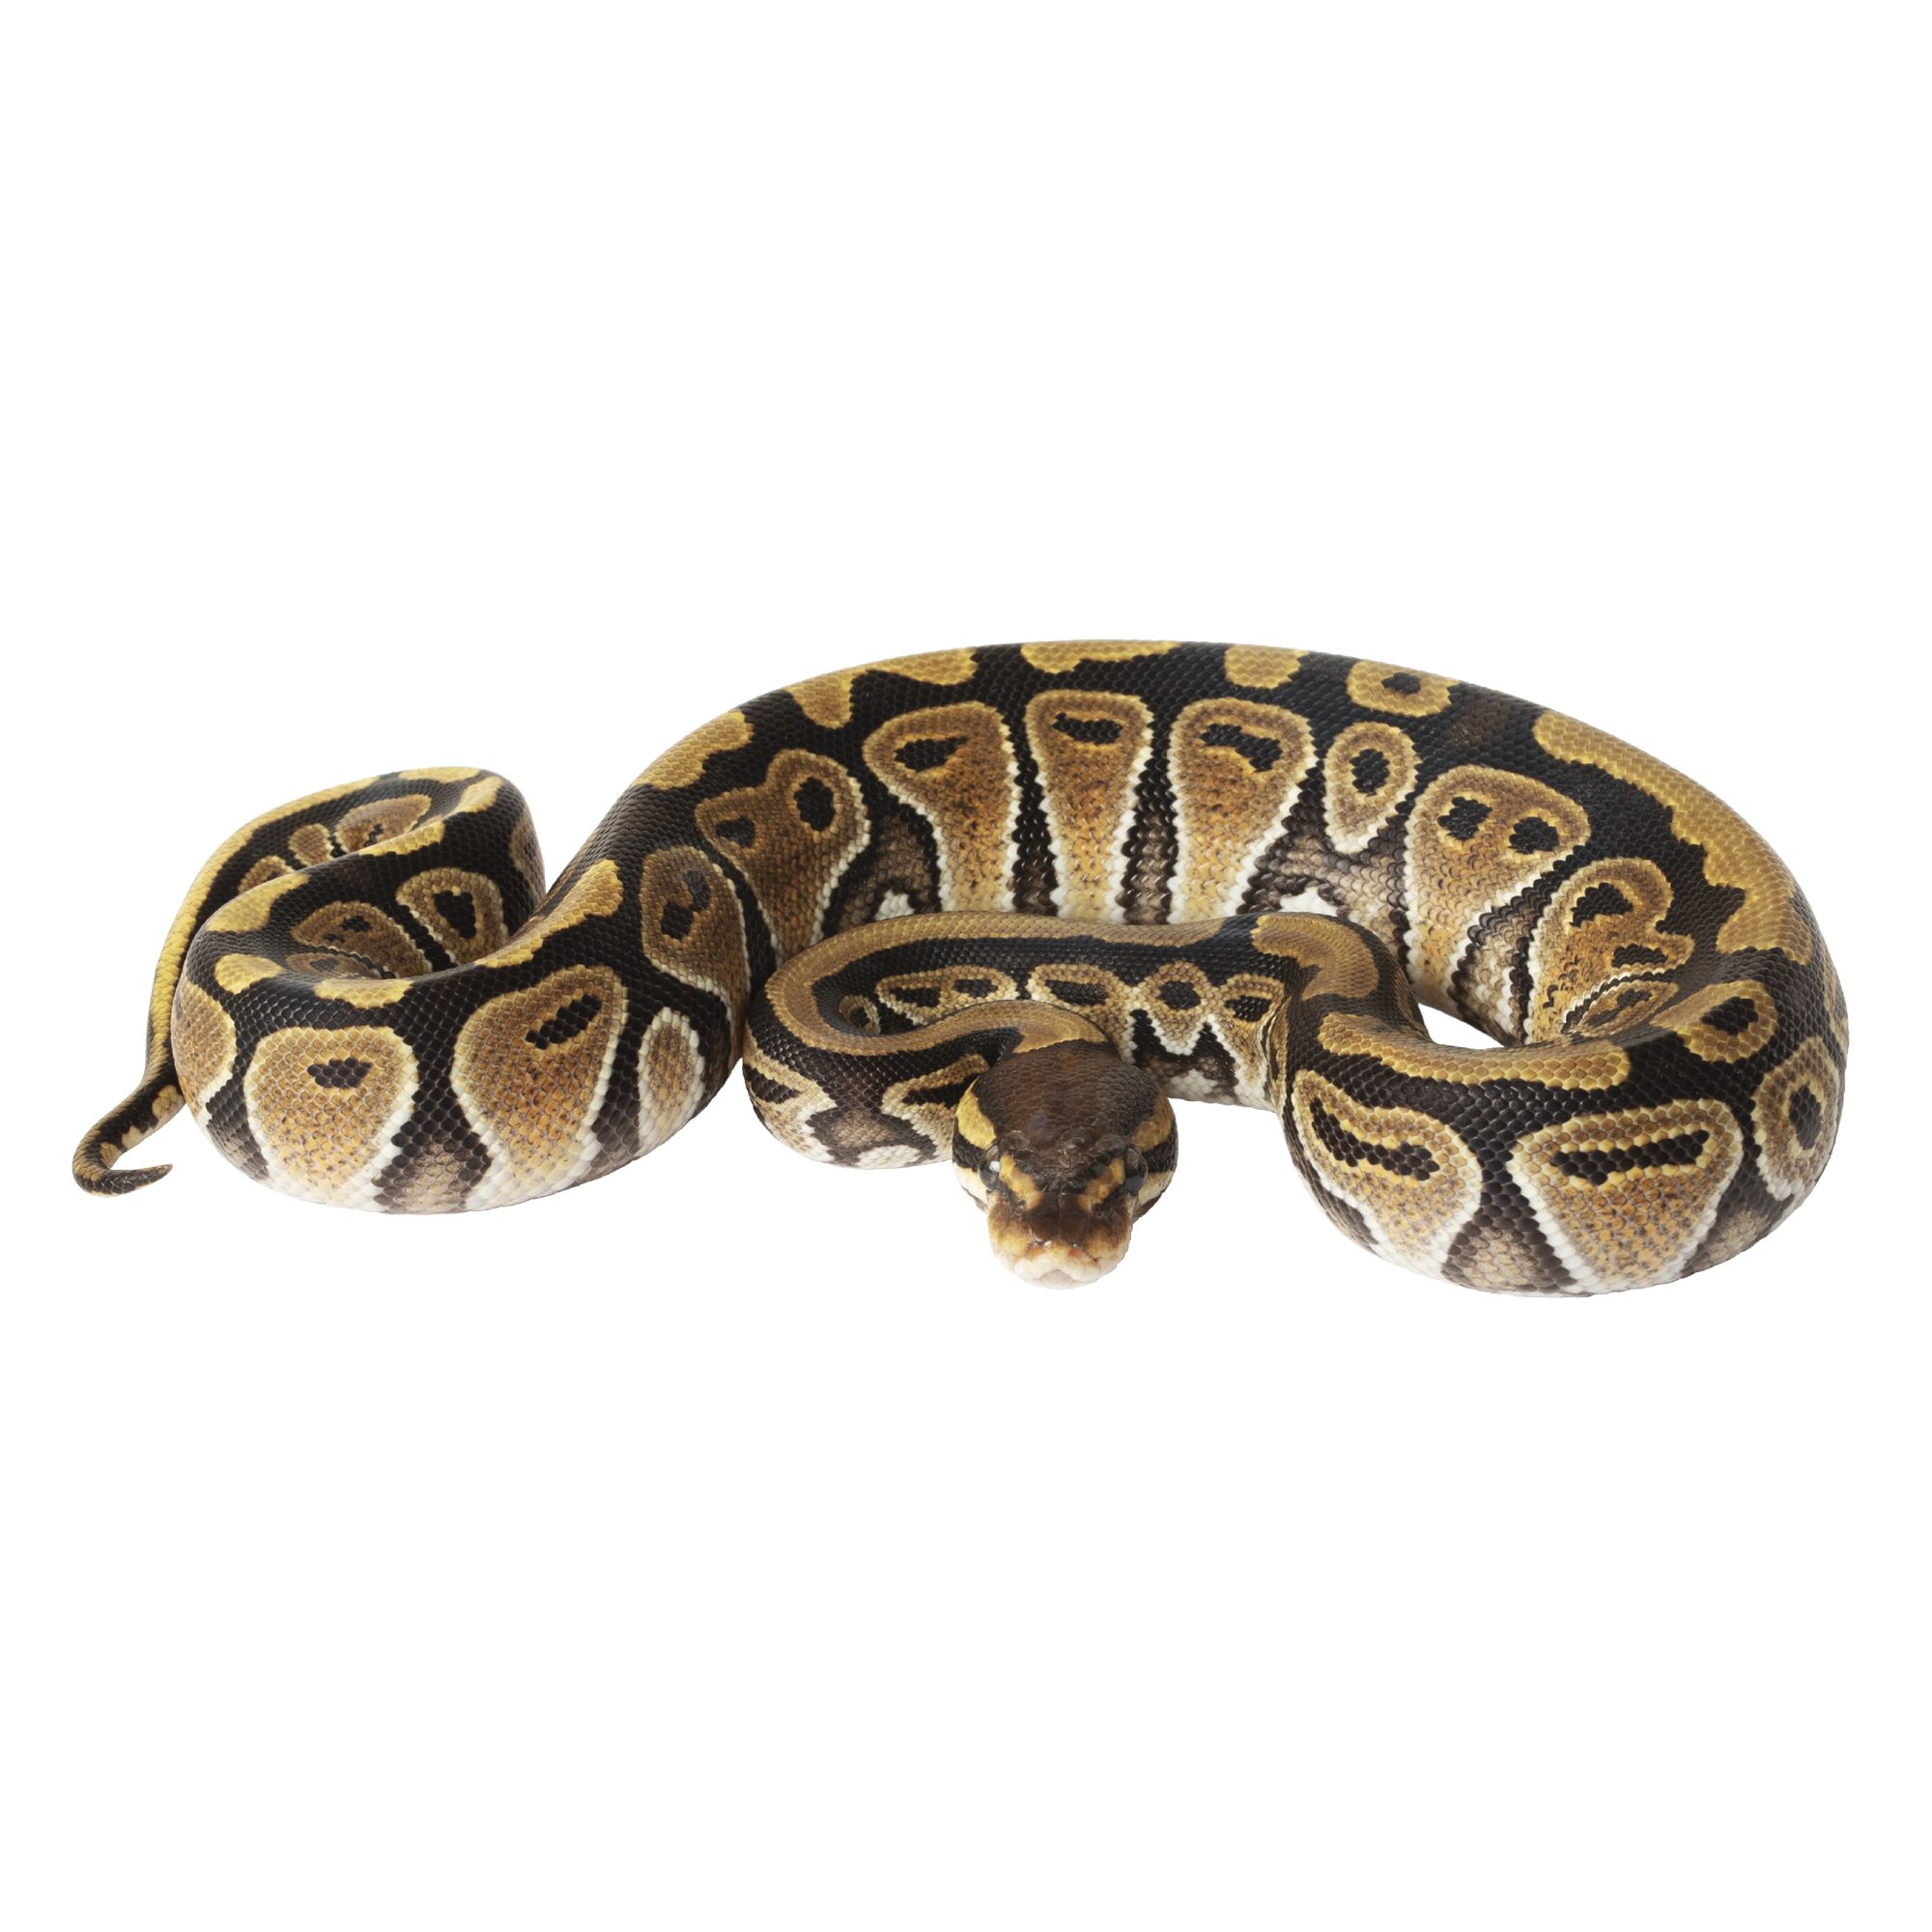 Ball Python Snake For Sale | Live Pet 